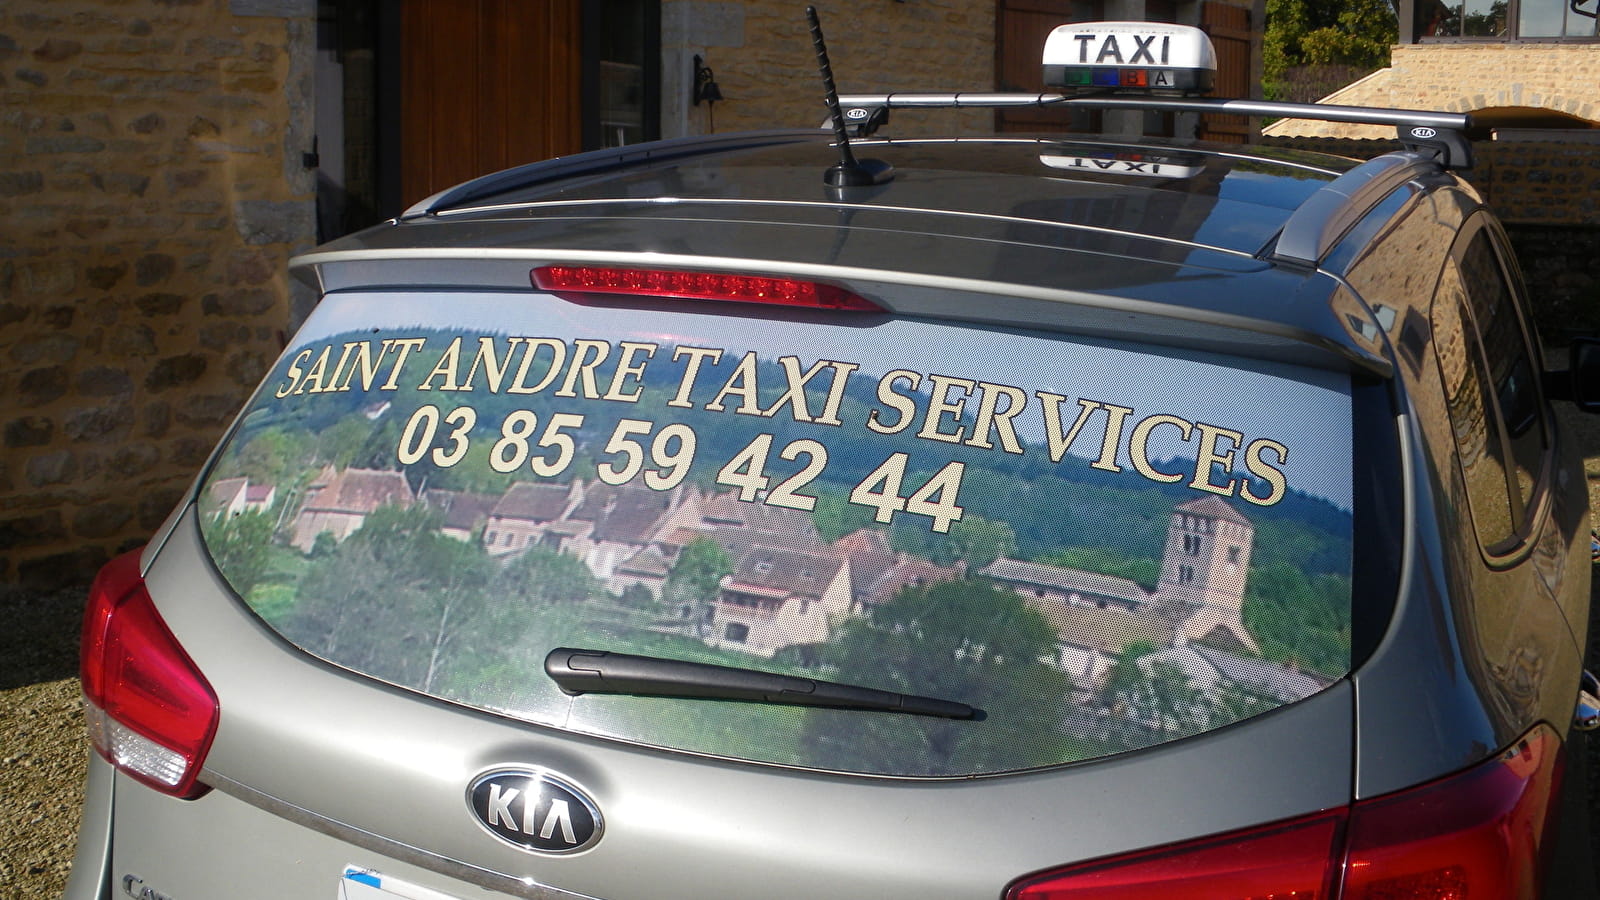 Saint André Taxi Services